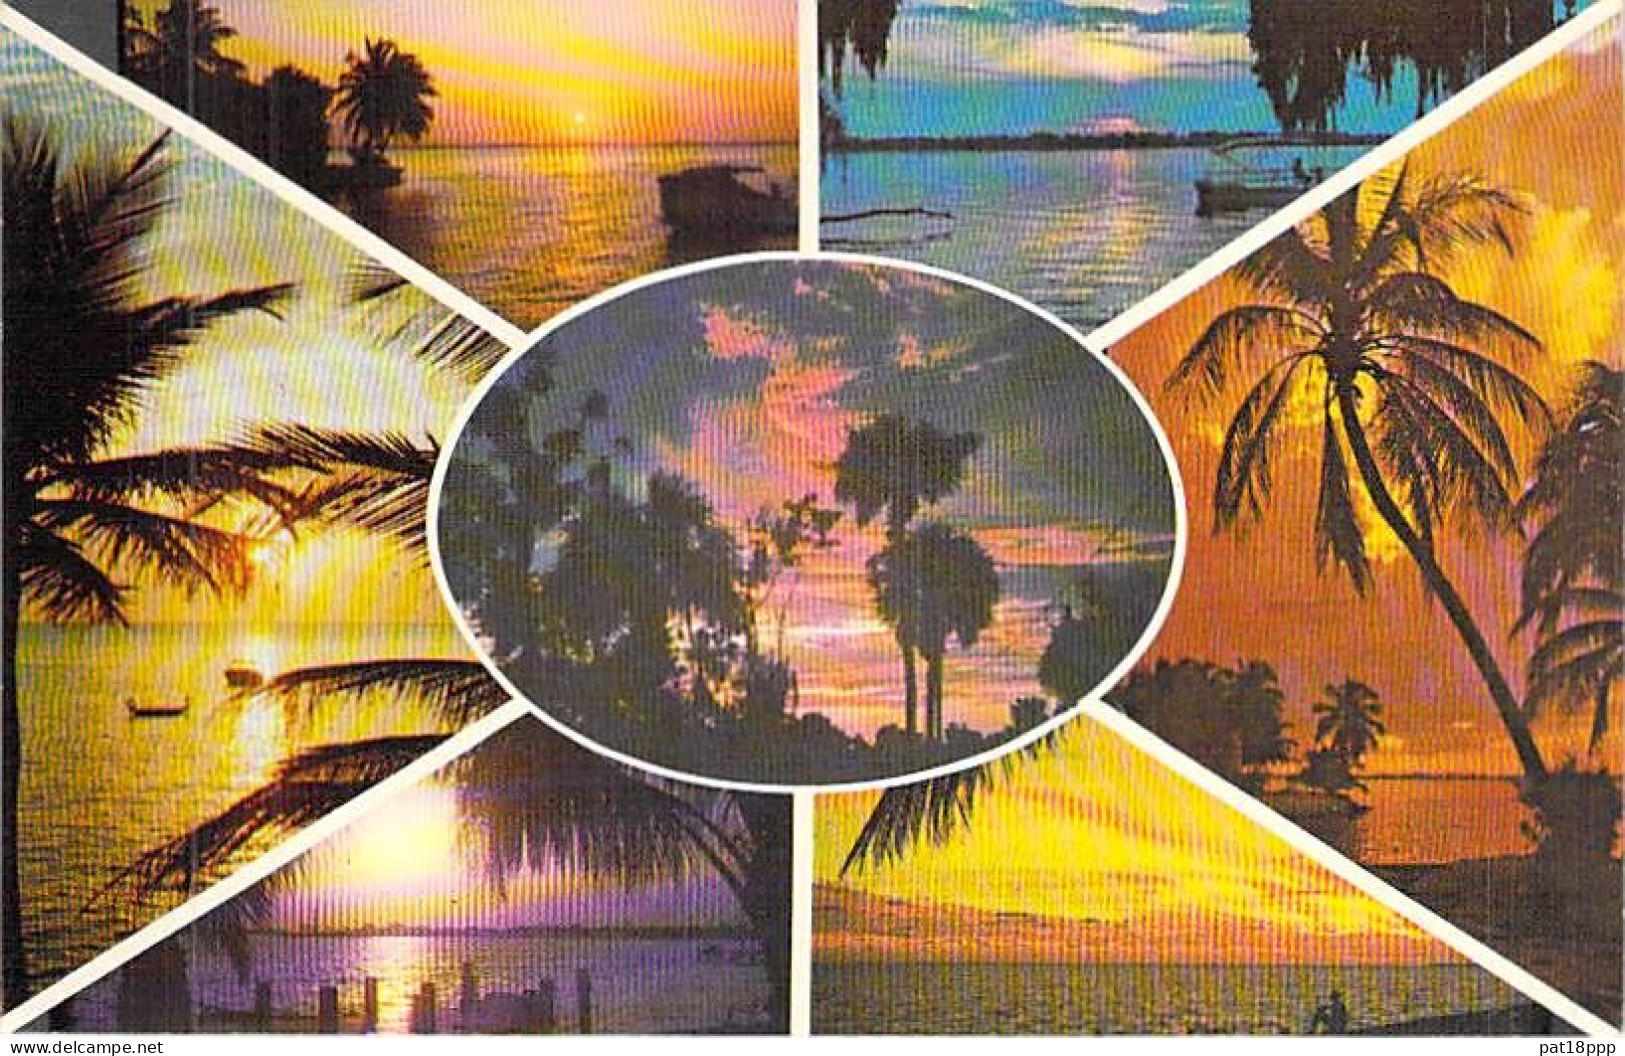 Bon Lot de 100 CPSM colorisées FLORIDE (USA) format CPA (80 % 1930-40's, puis 1920's et 10 GF 1980's) 0.15 € / carte